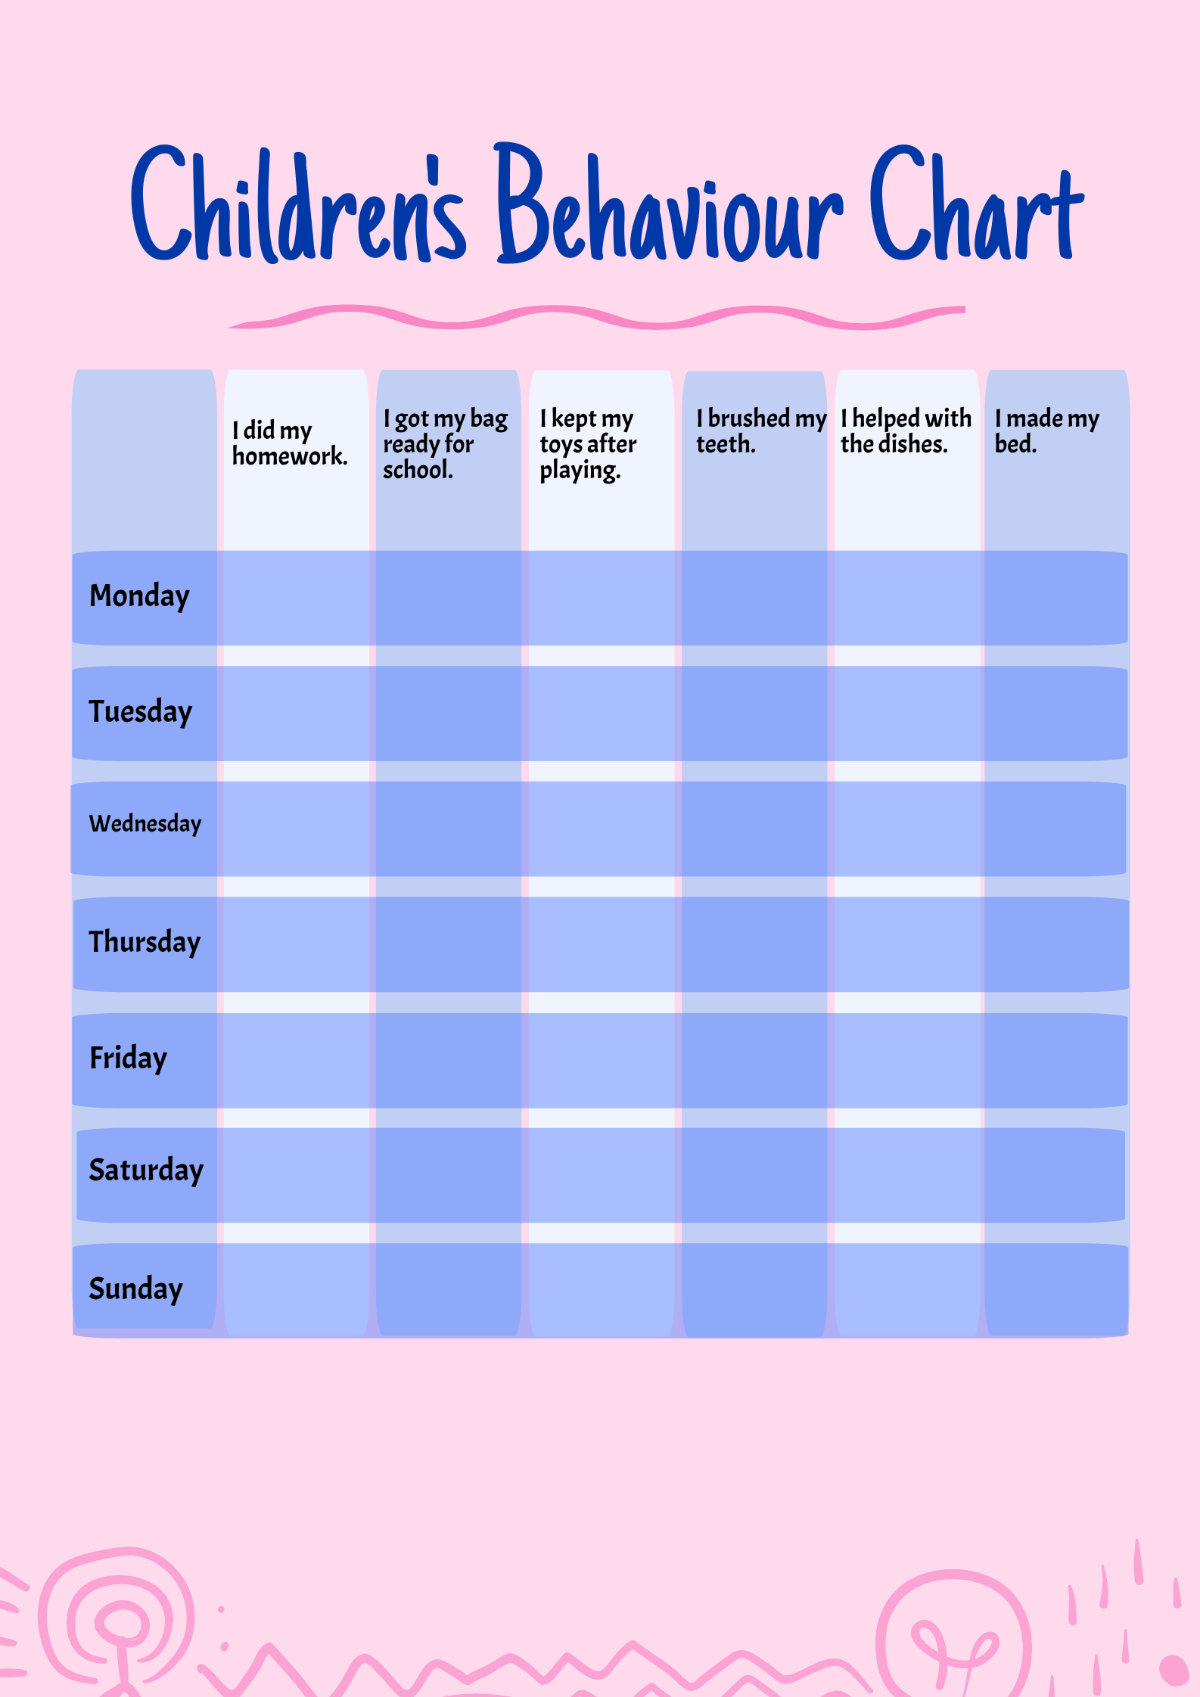 Children's Behaviour Chart Template